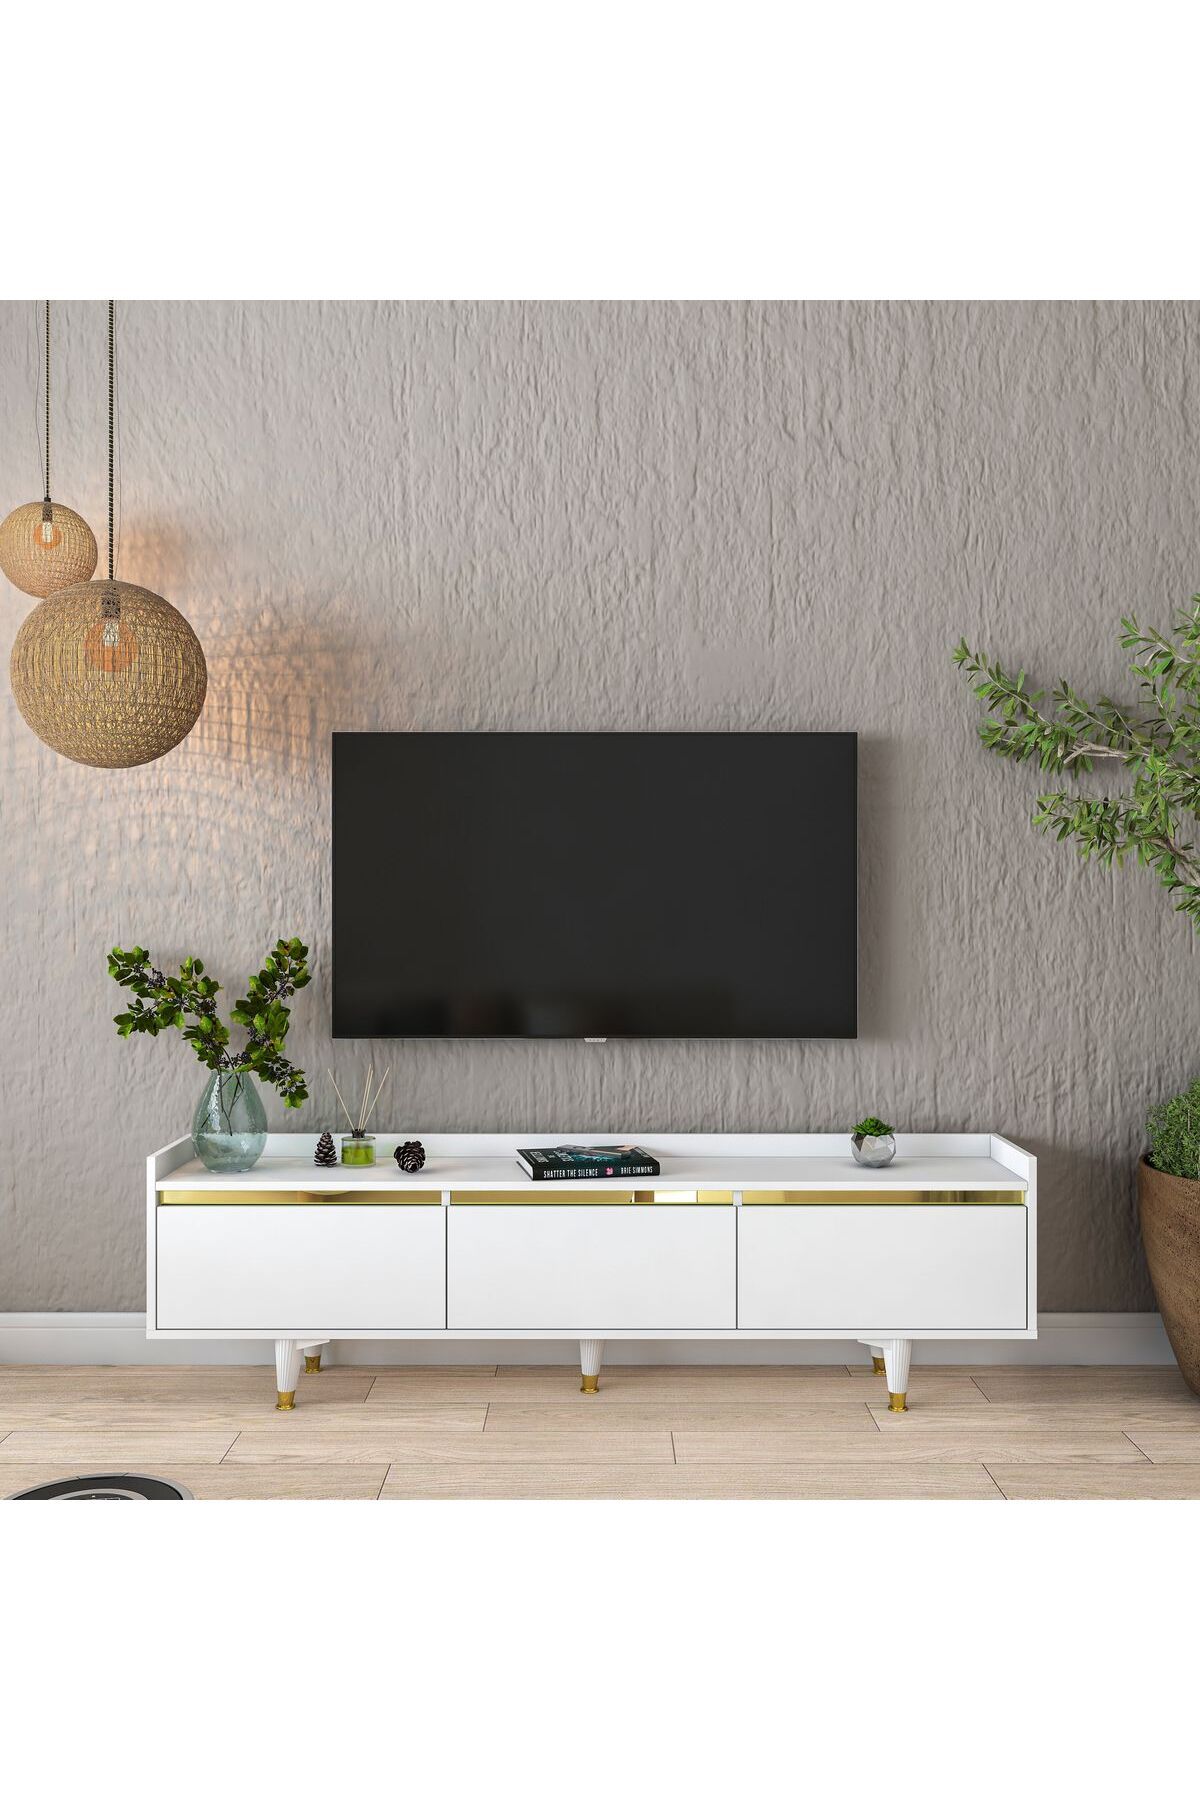 Rani Mobilya Rani AA149 Tv Ünitesi Düşer Kapaklı Gold Aynalı Çıtalı Tv Sehpası 180 Cm Beyaz